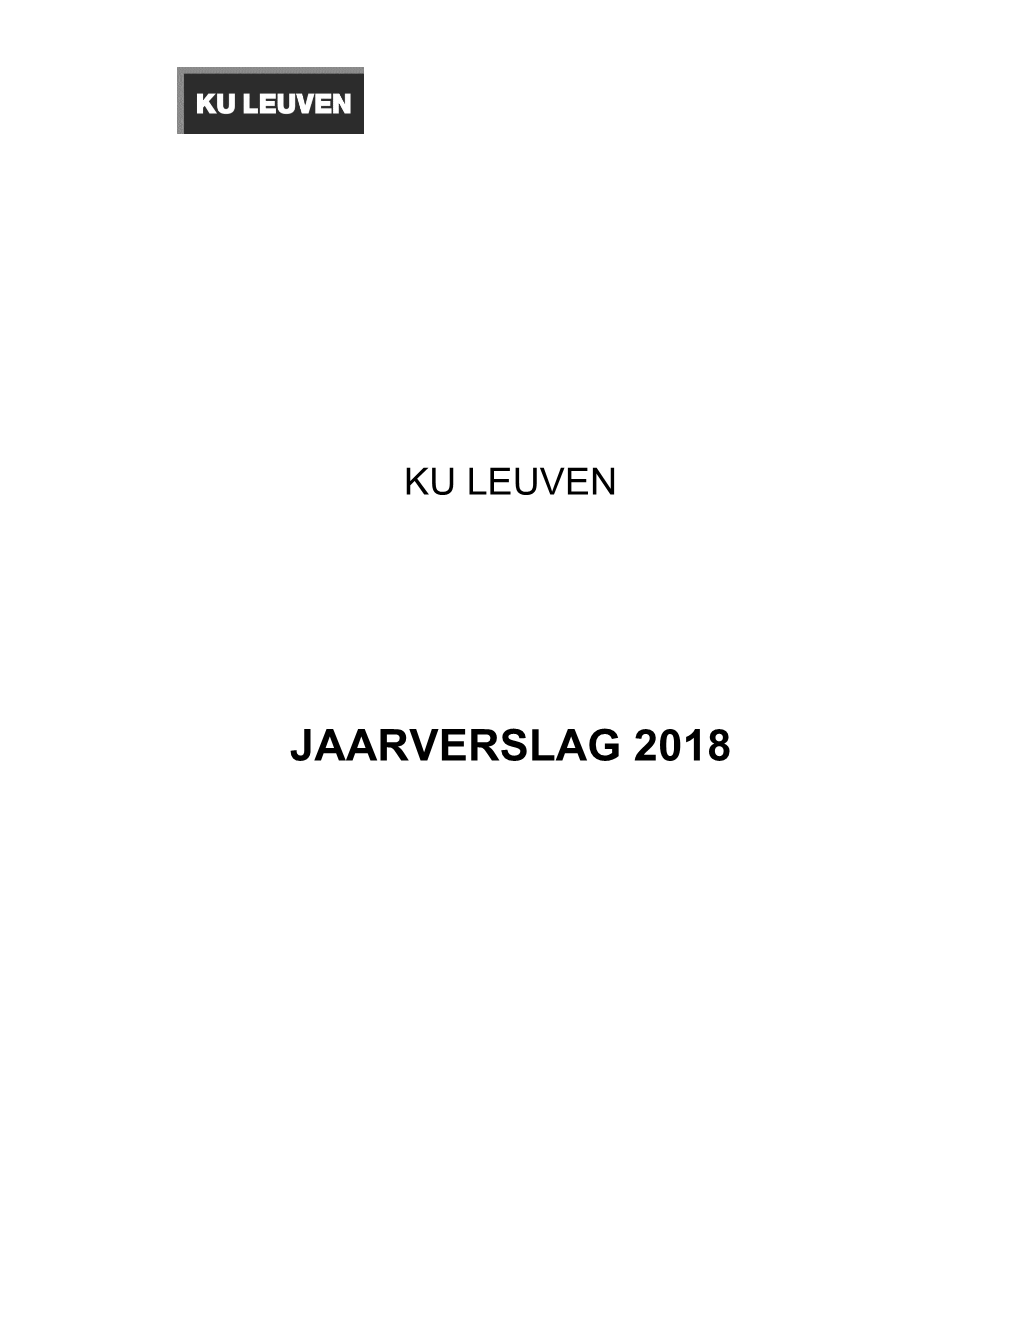 KU Leuven Jaarverslag 2018.Pdf